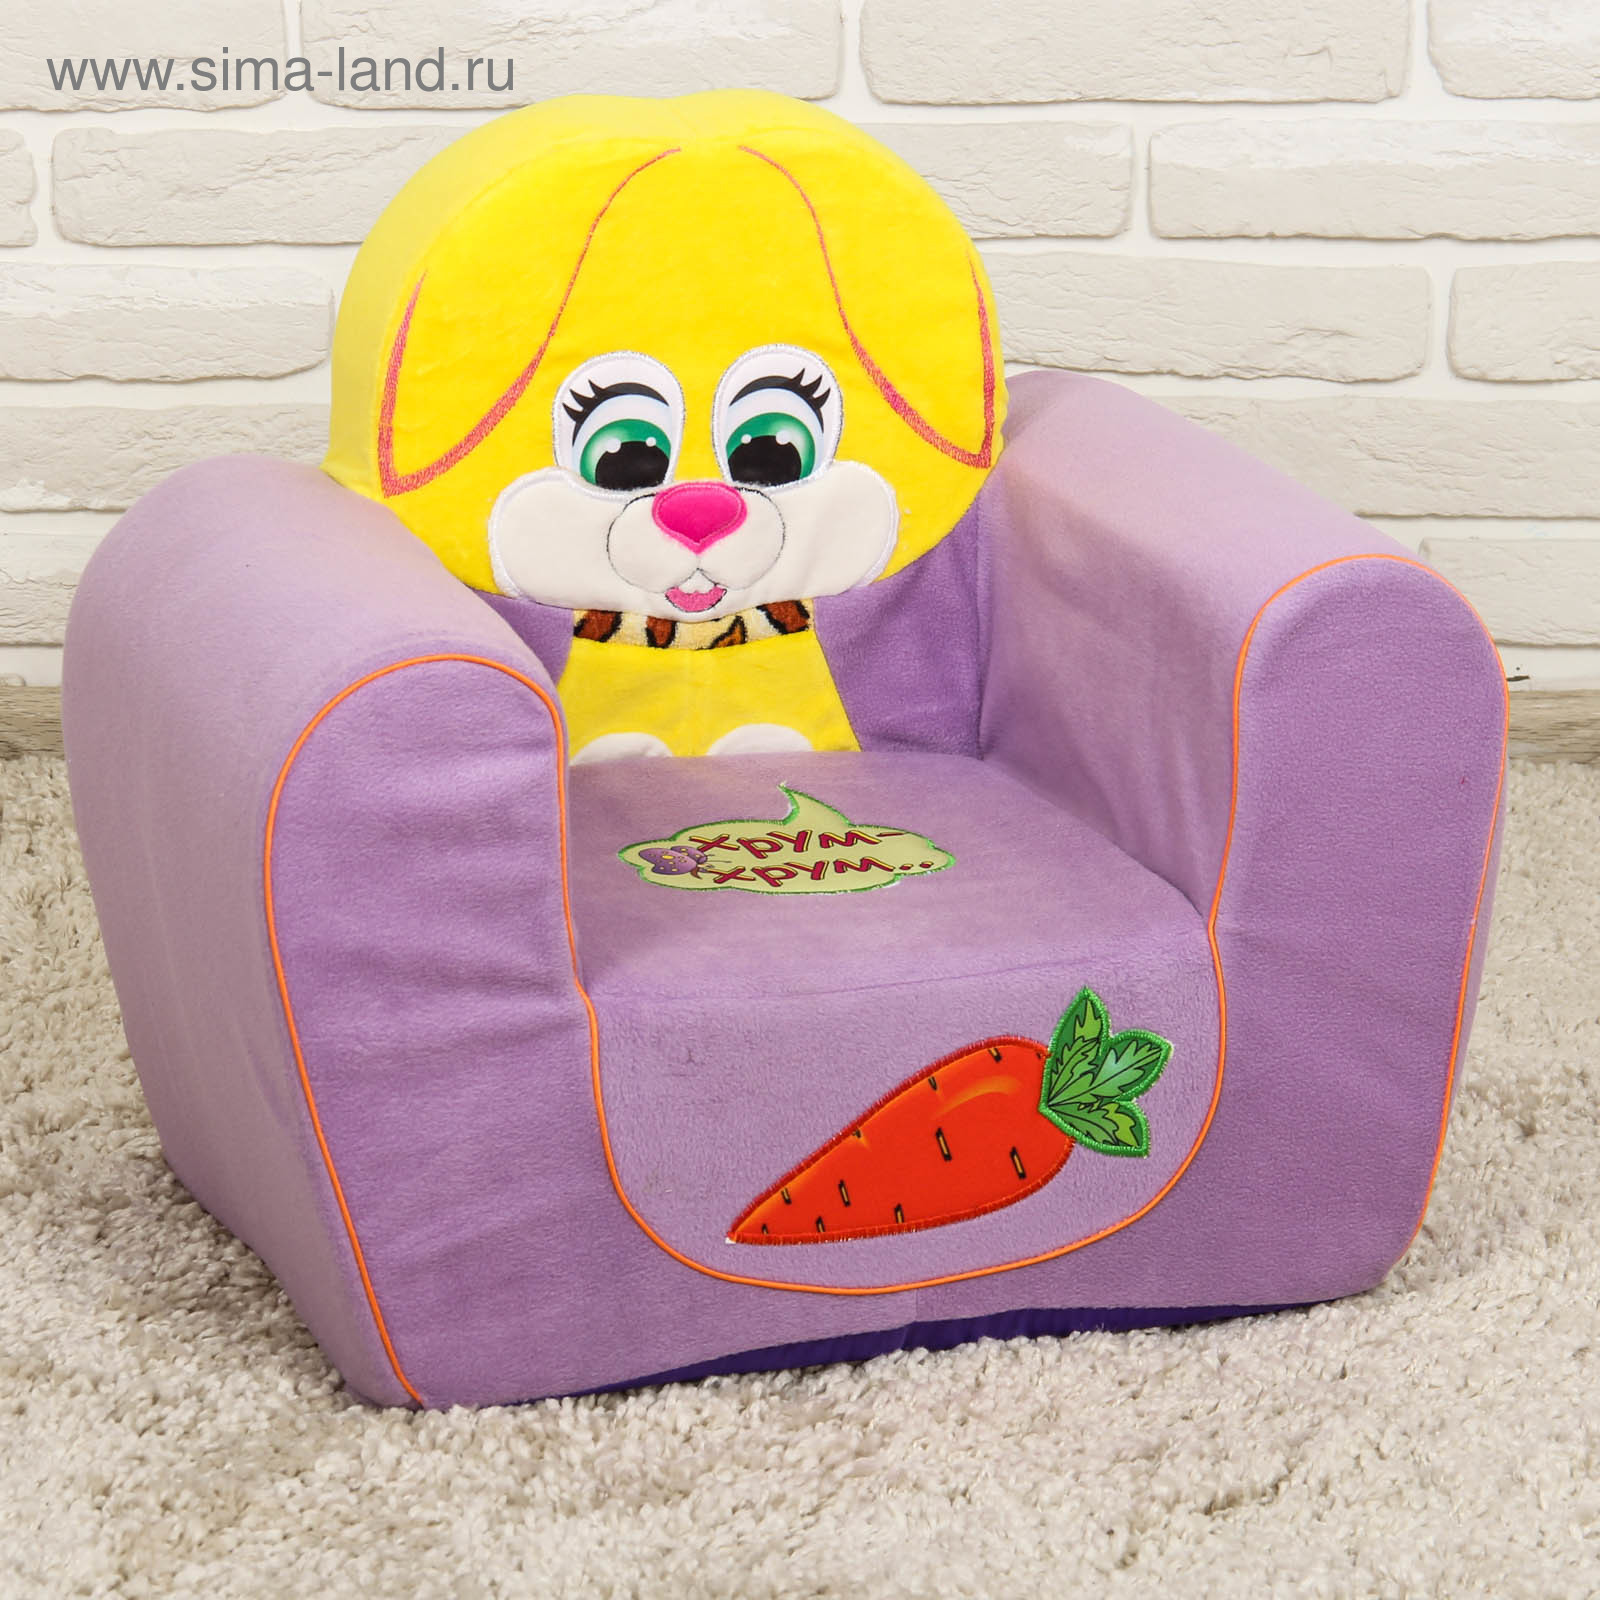 Мягкое кресло для детей